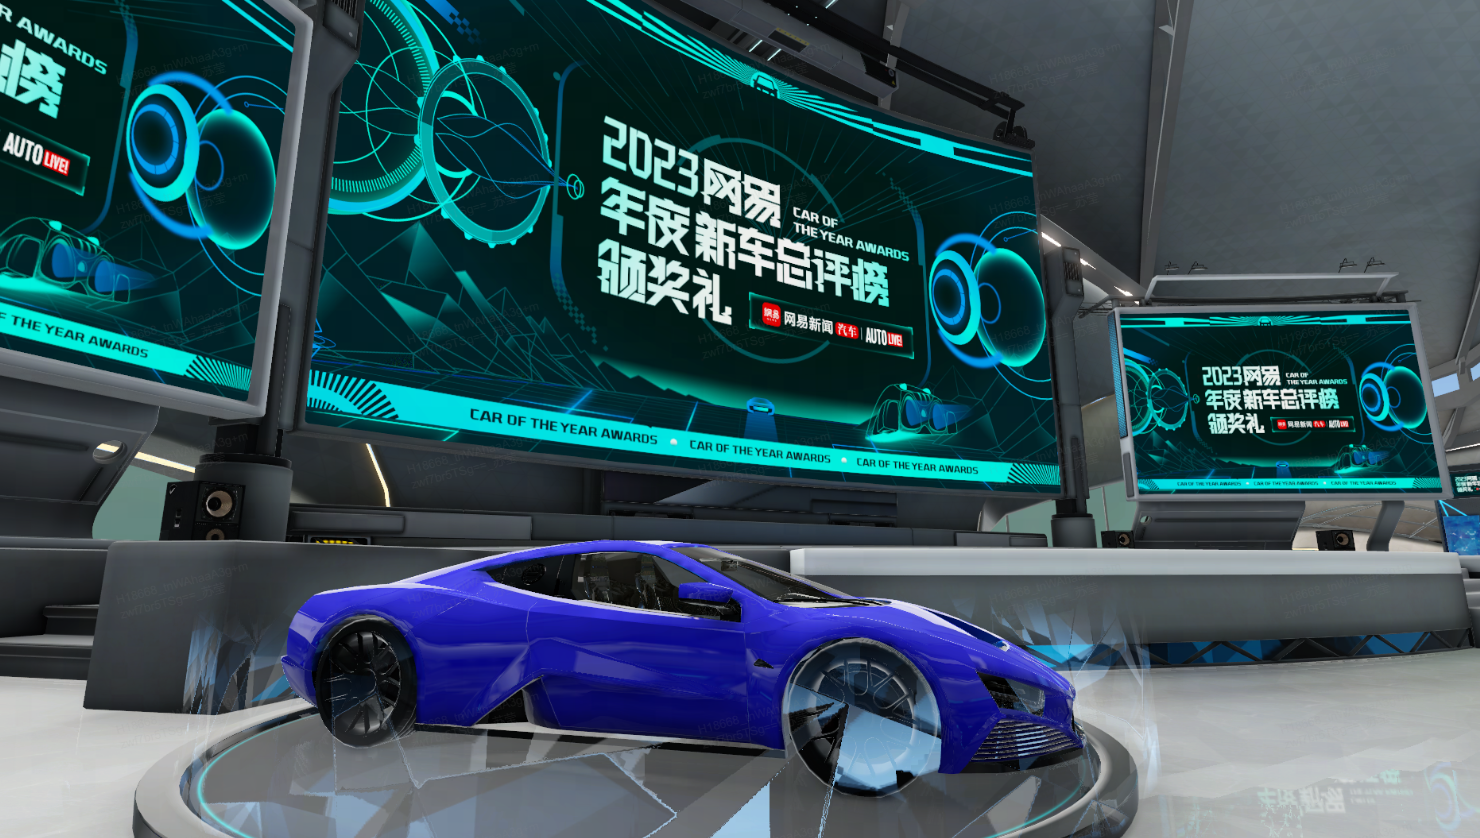 这是一款蓝色的现代概念跑车，展示在一个高科技感的展览室内，周围有多个显示屏展示着相关信息。